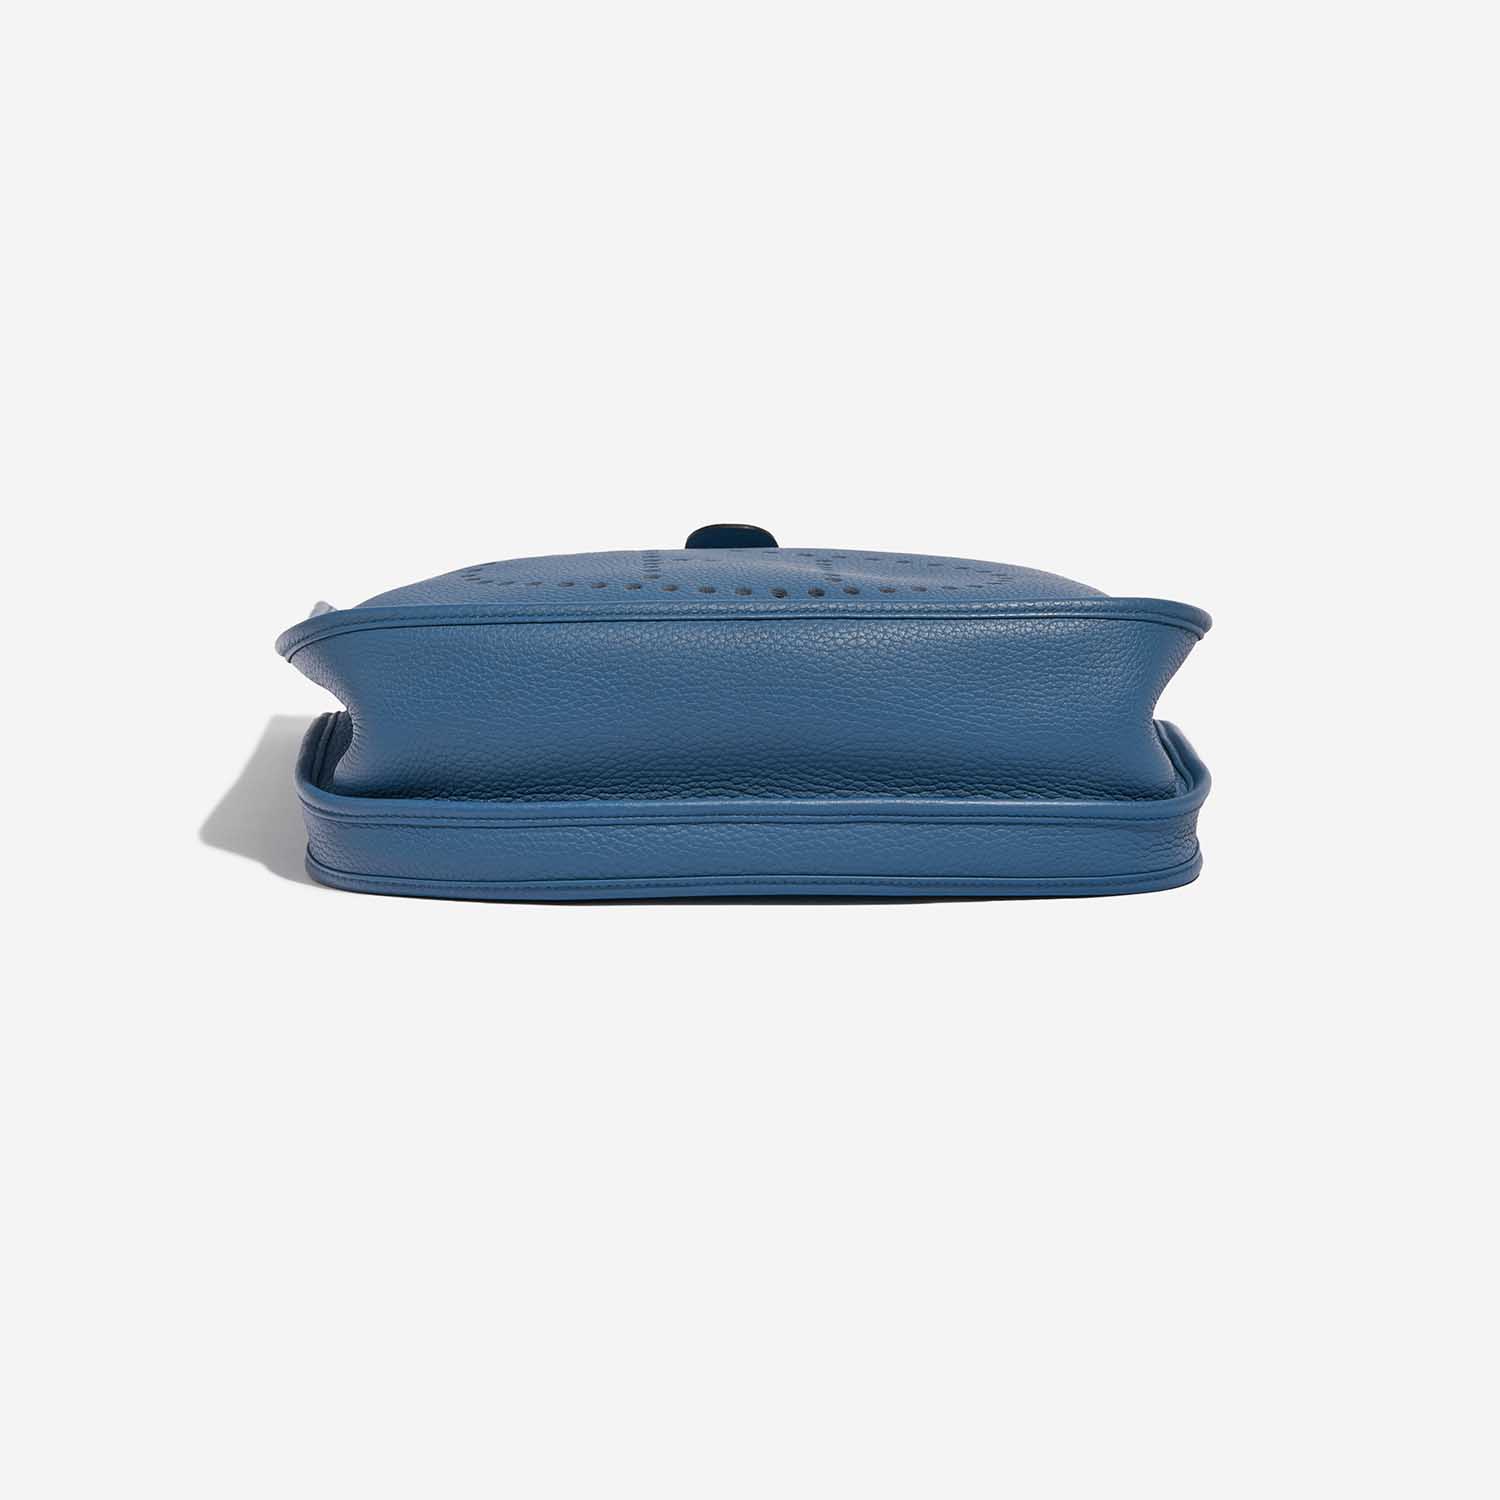 Pre-owned Hermès Tasche Evelyne 33 Clemence Bleu Agathe Blue Bottom | Verkaufen Sie Ihre Designer-Tasche auf Saclab.com